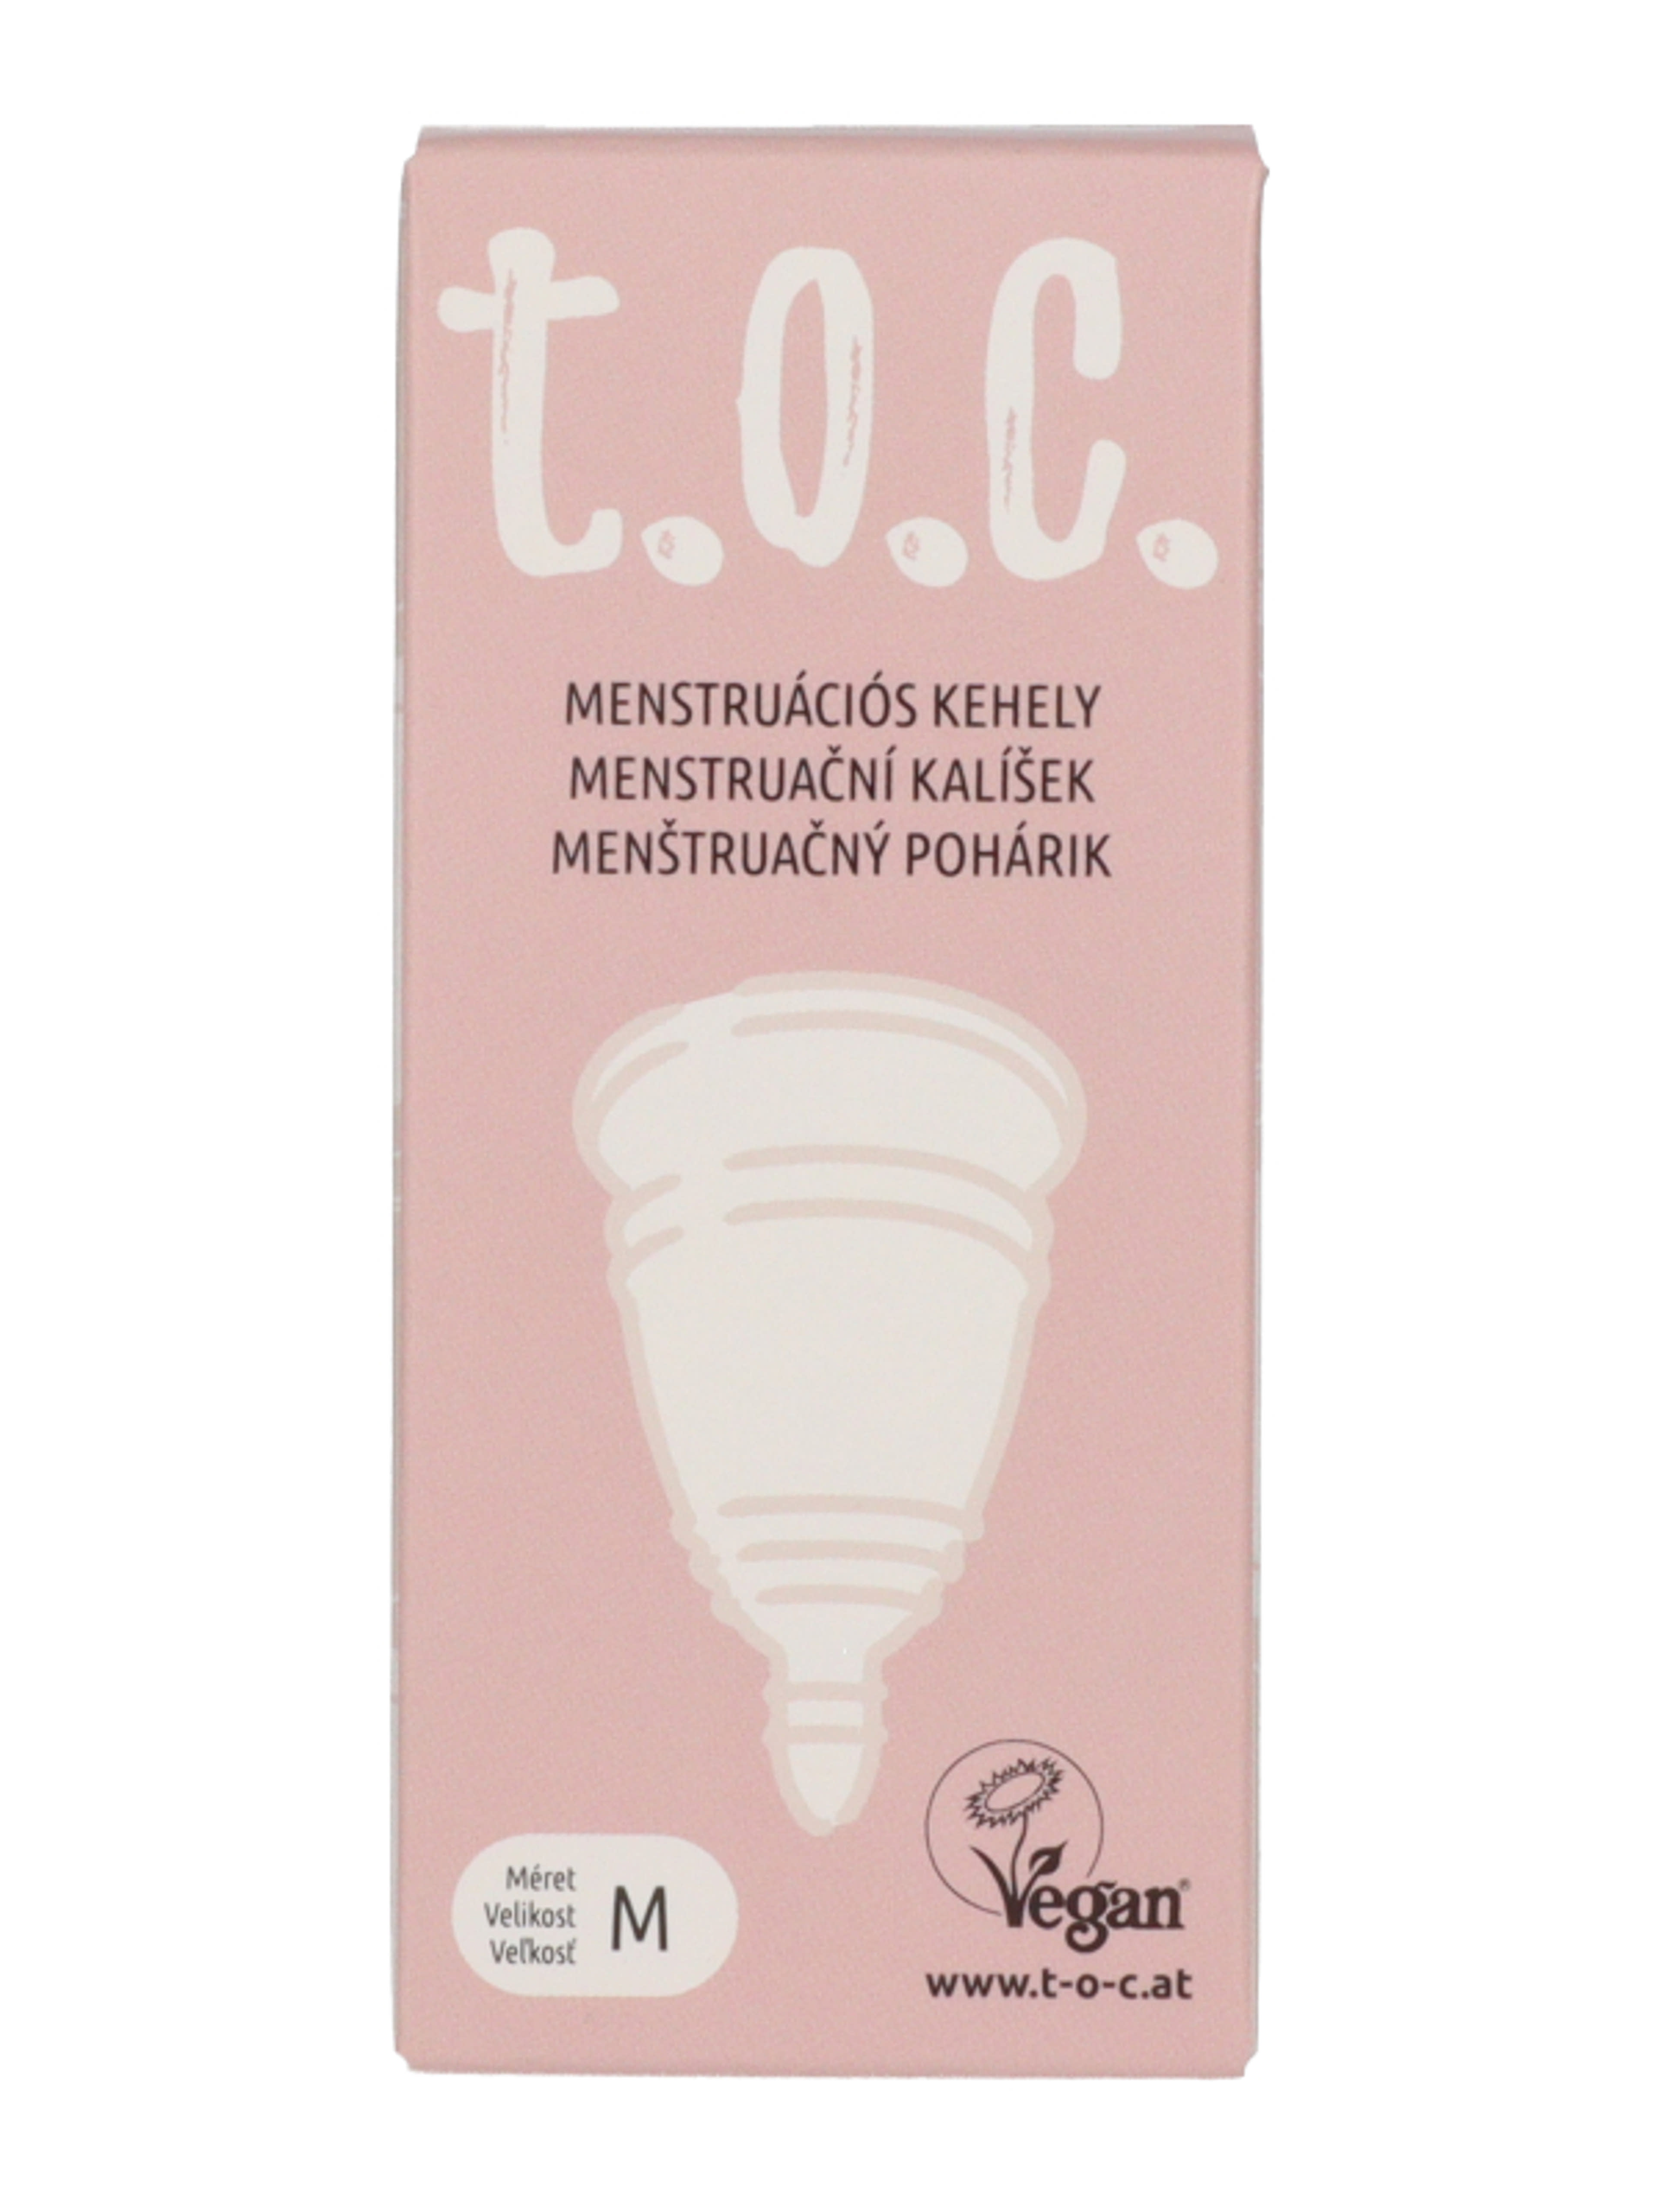 T.o.c menstruációs kehely M-es méret - 1 db